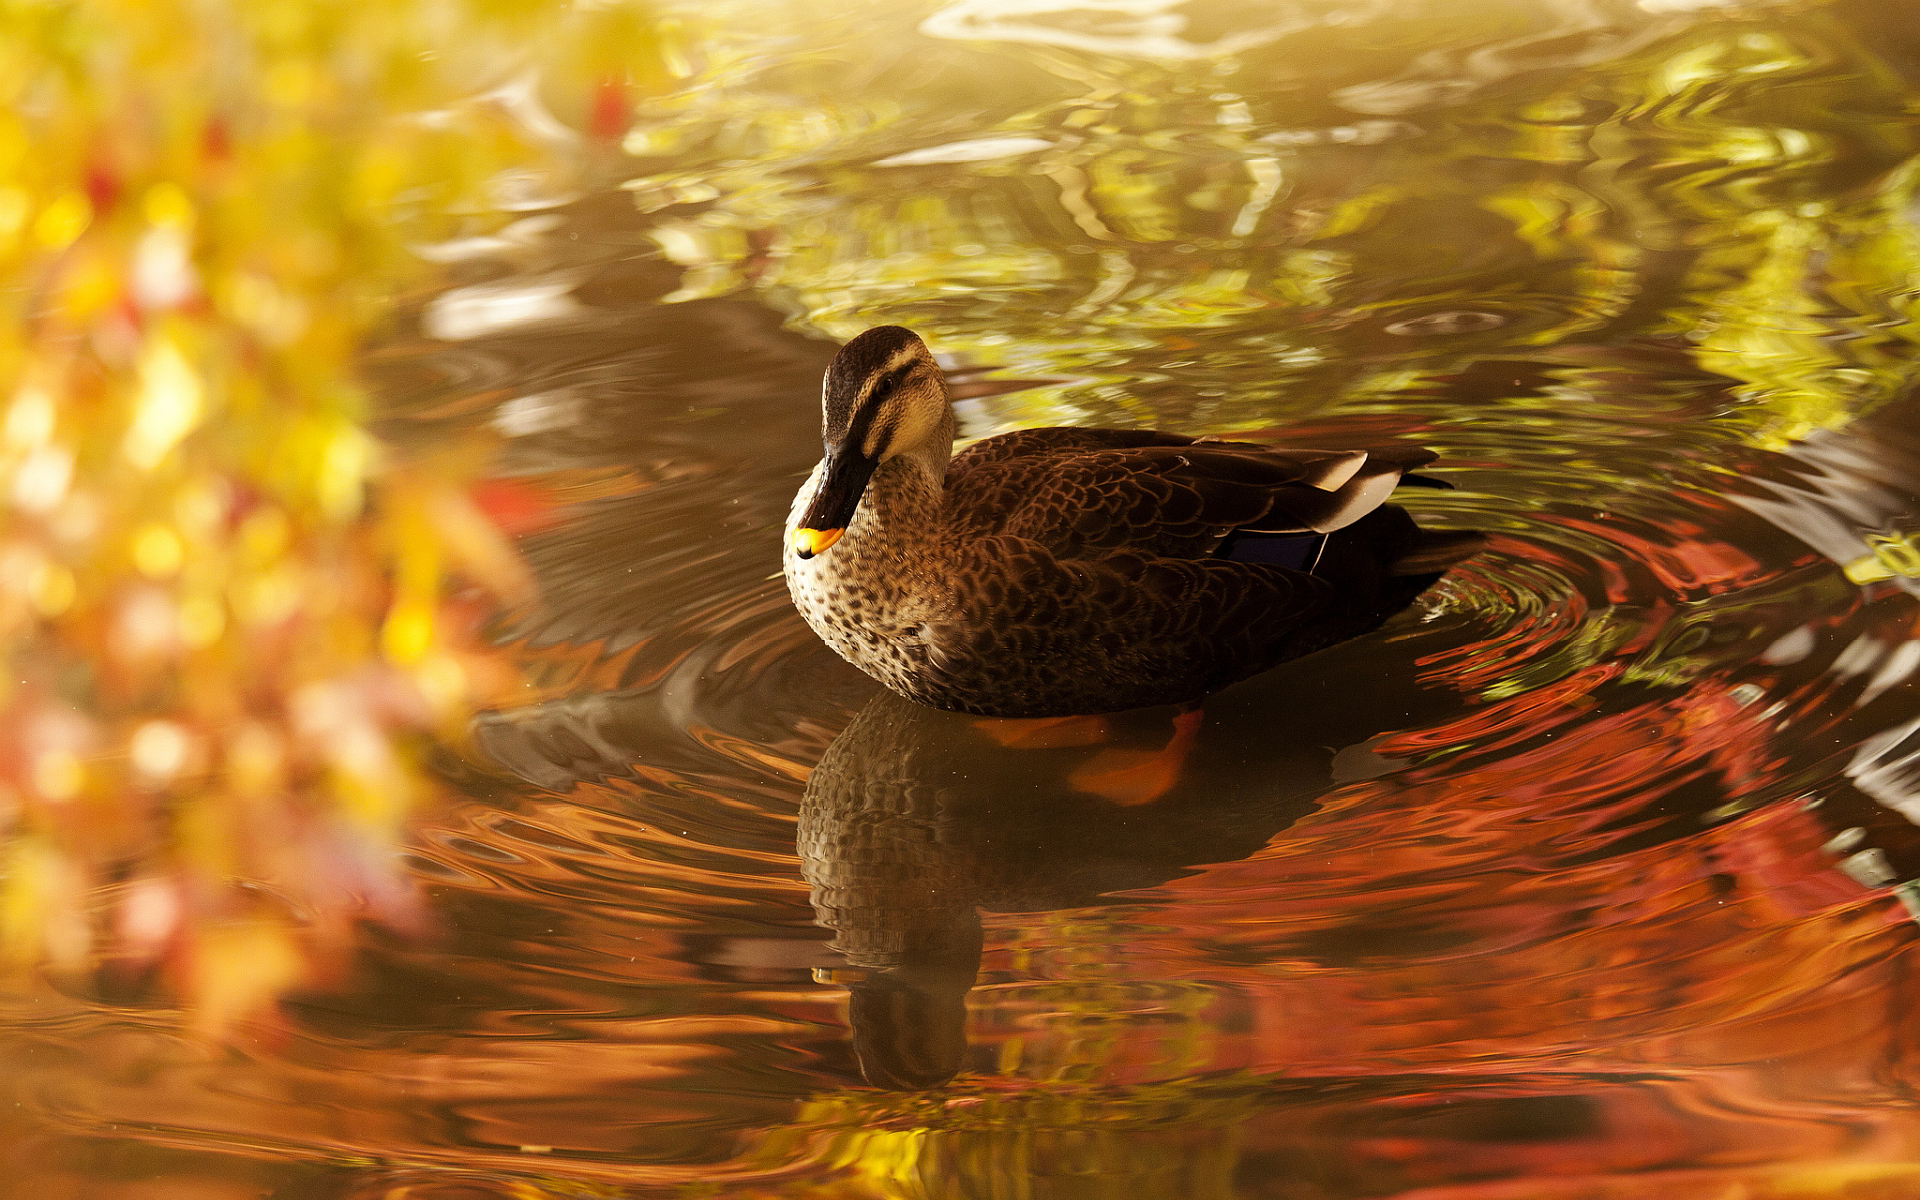 duck cute wallpaper - HD Desktop Wallpapers | 4k HD